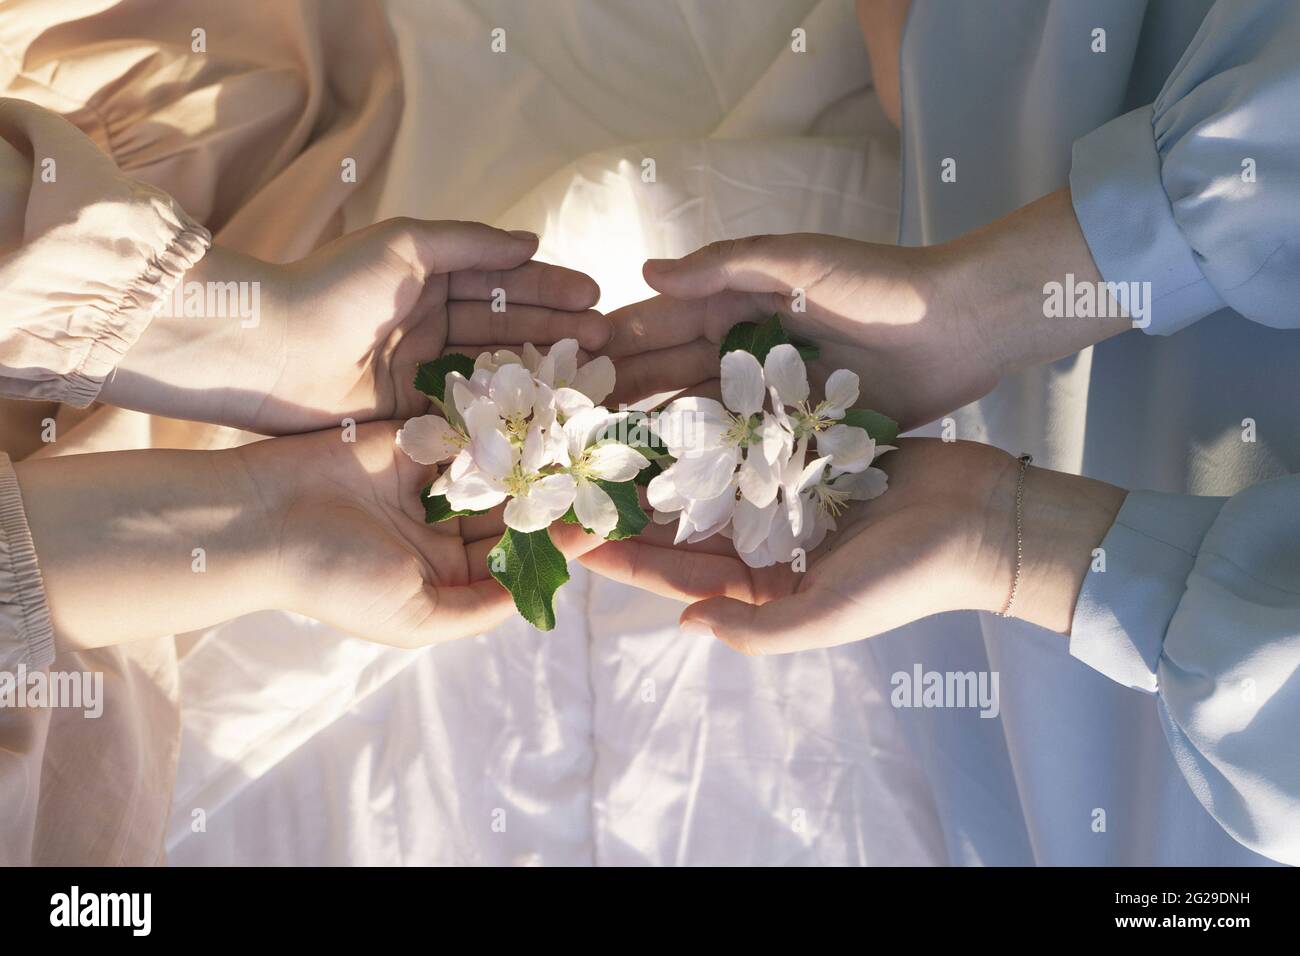 Primo piano di fiori nelle mani degli adolescenti seduti sul letto Foto Stock